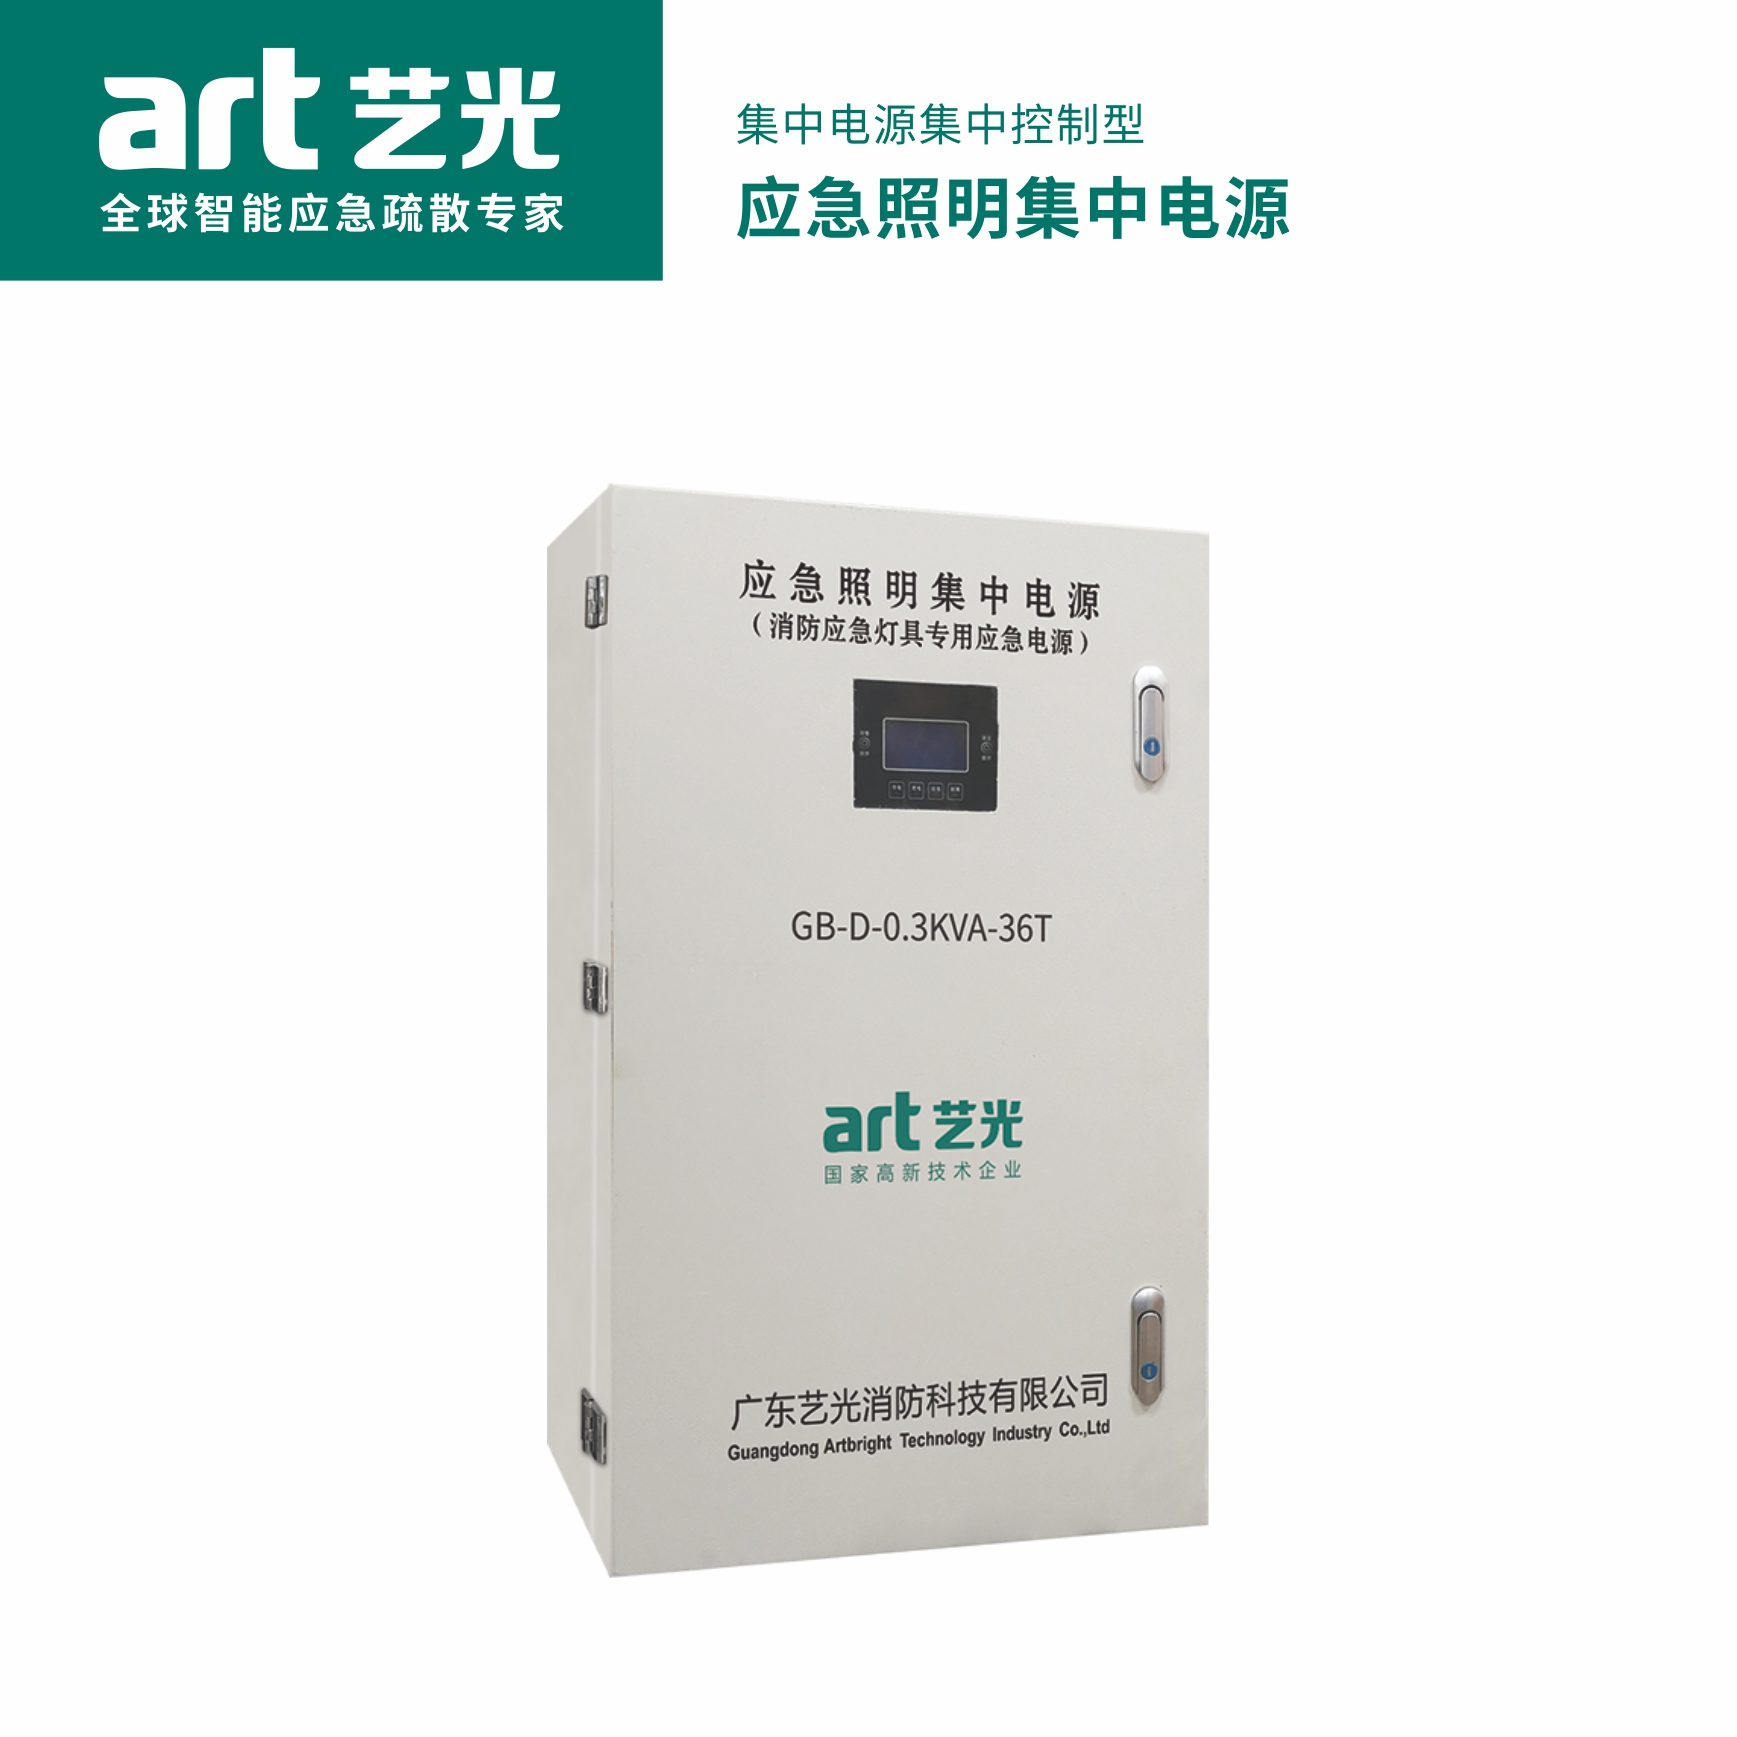 集中电源集中控制型 应急照明集中电源  GB-D-0.3KVA-36T